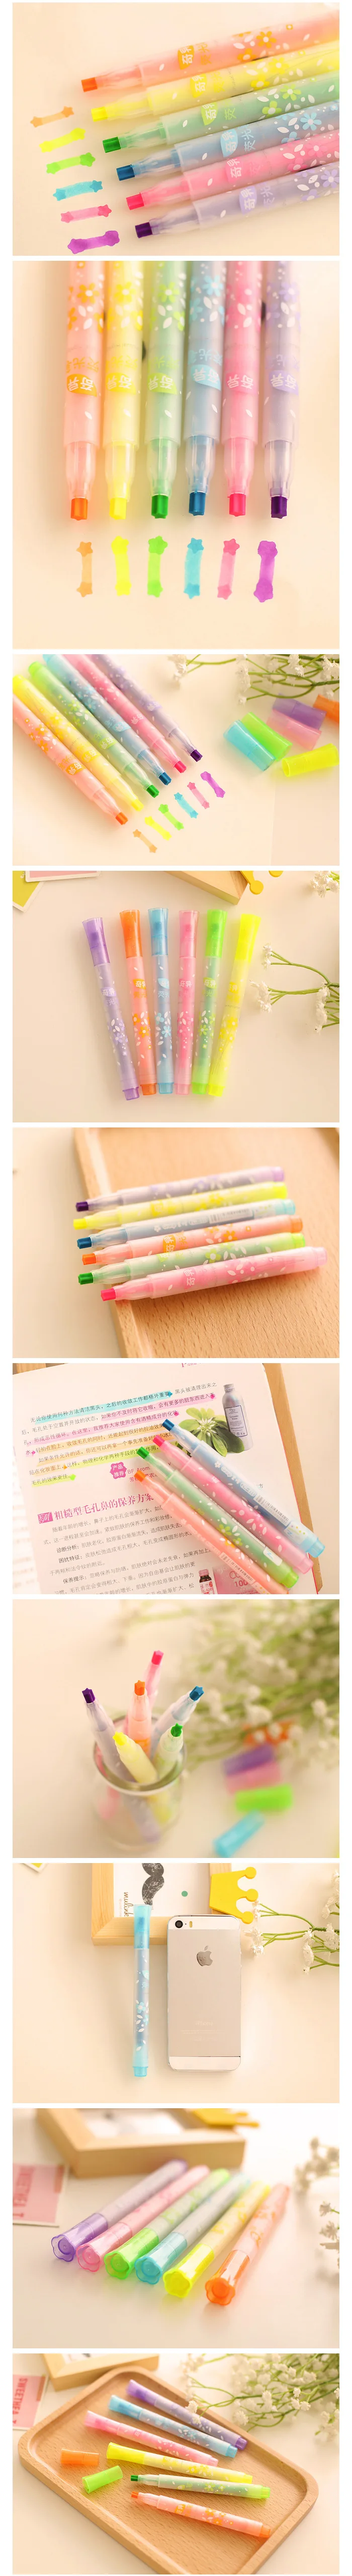 1728 шт./компл. DHL Южная Корея канцелярские принадлежности креативный Звездный Тип флуоресцентная ручка перьевая Ручка Одиночный цветной маркер